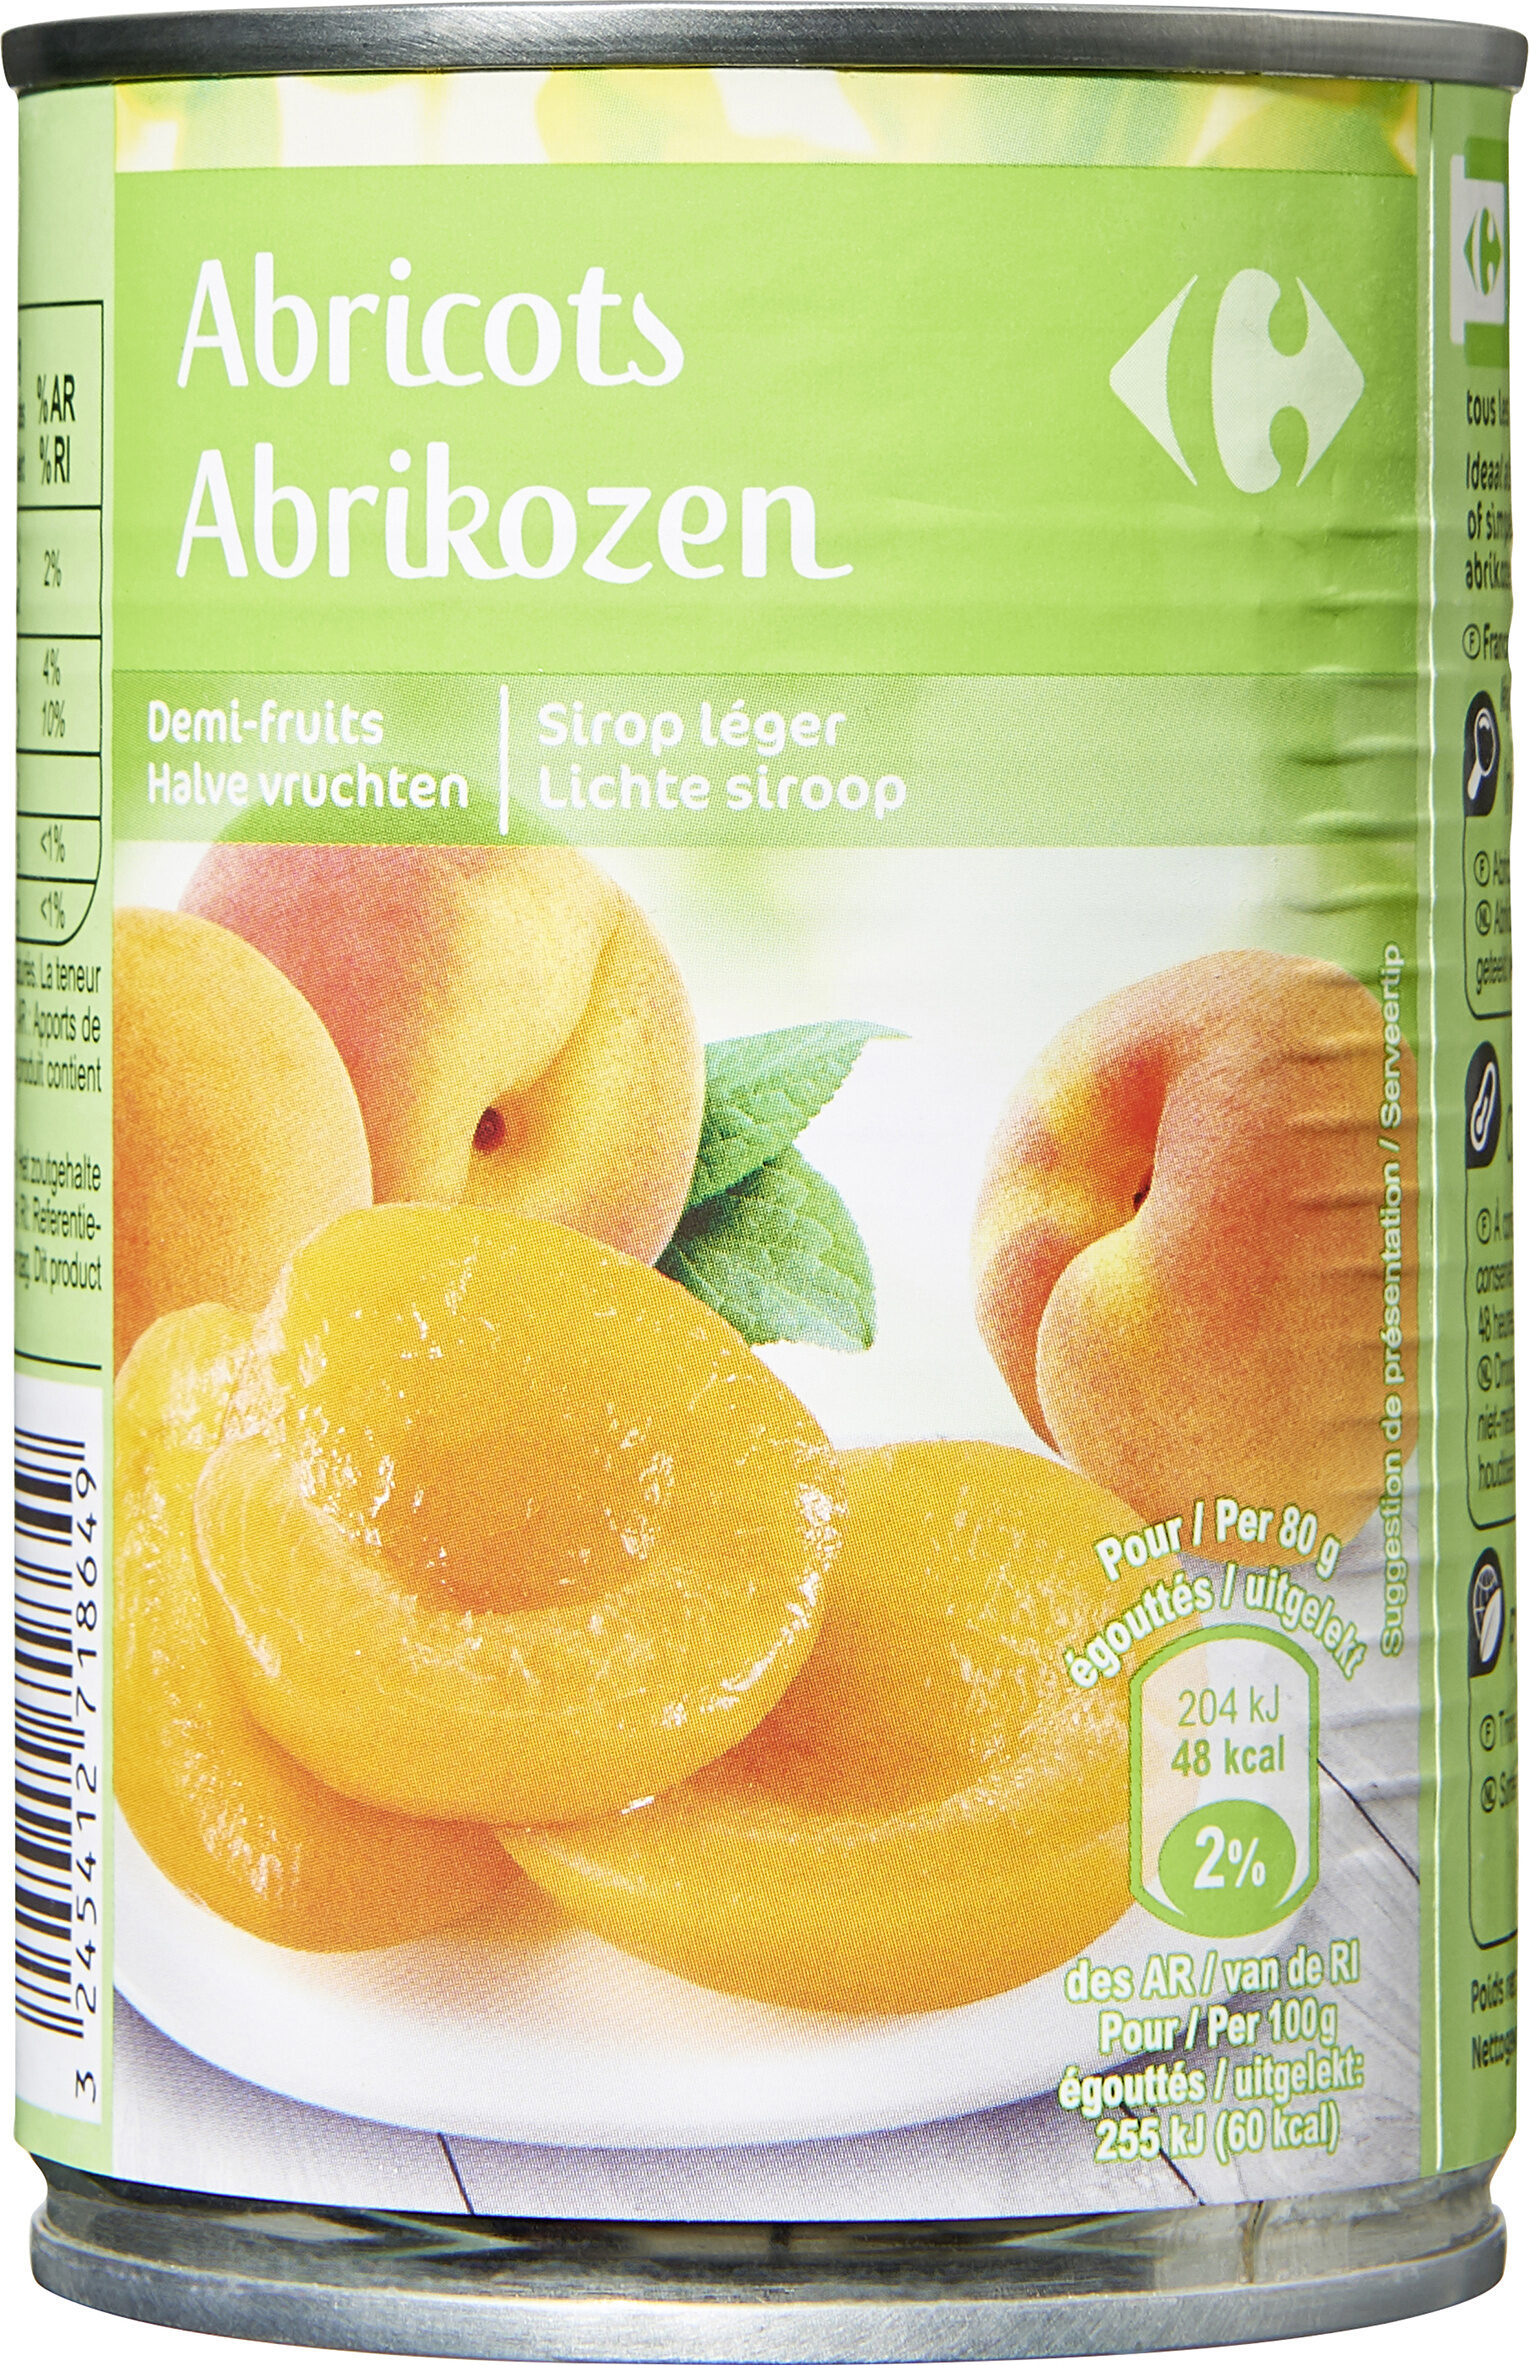 Abricots - Demi-fruits au sirop léger - Produit